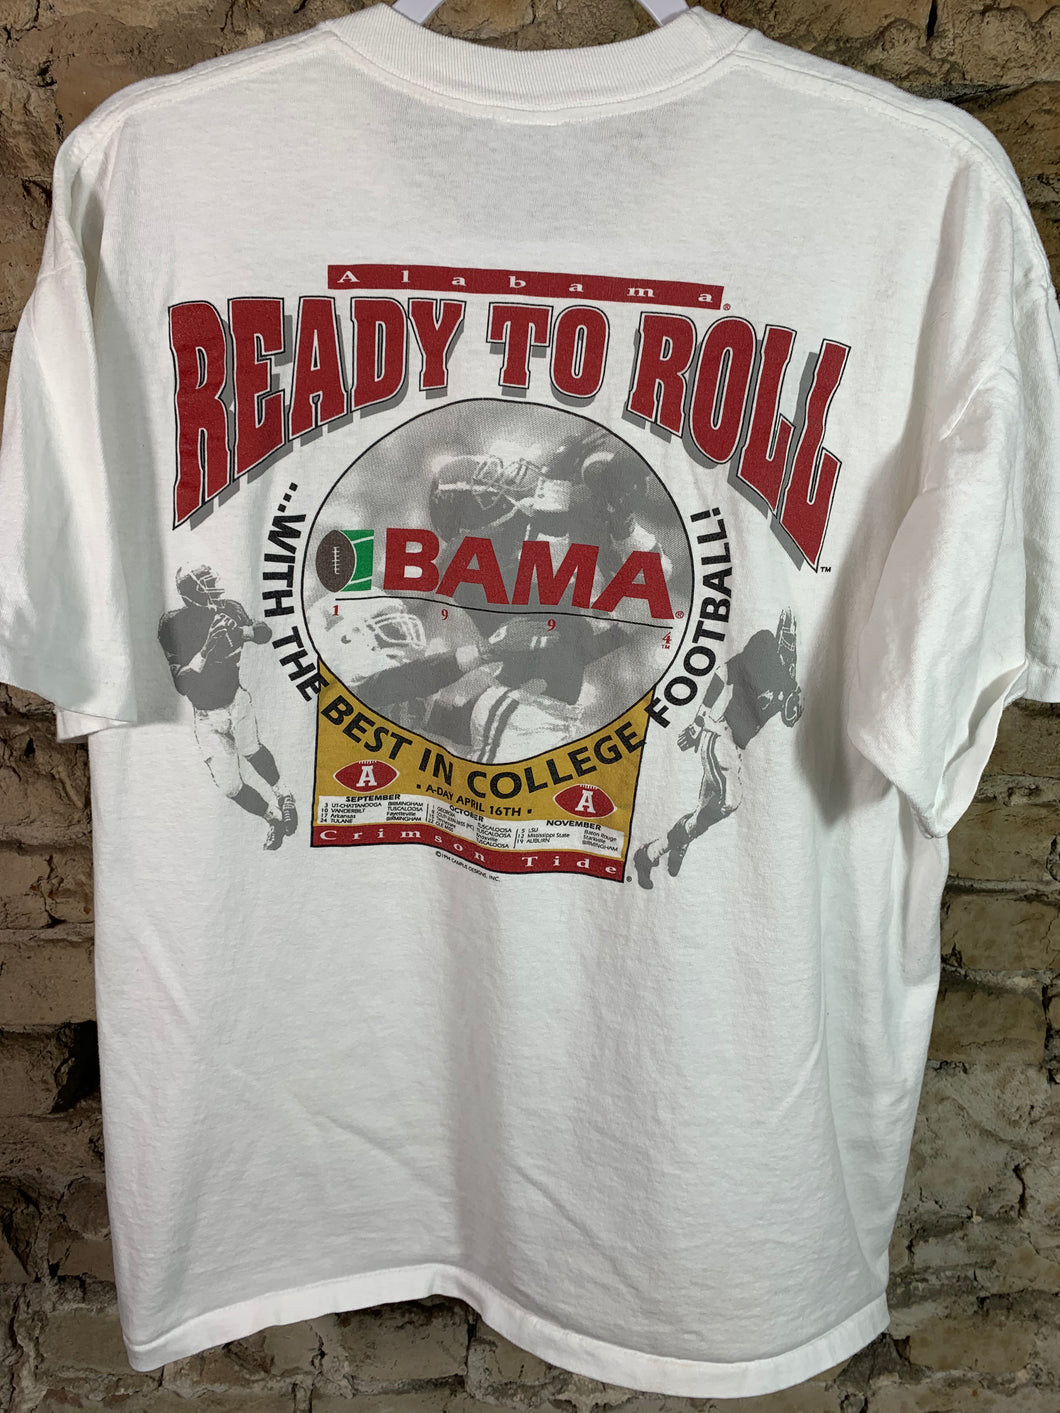 1994 Alabama Football T-Shirt Large